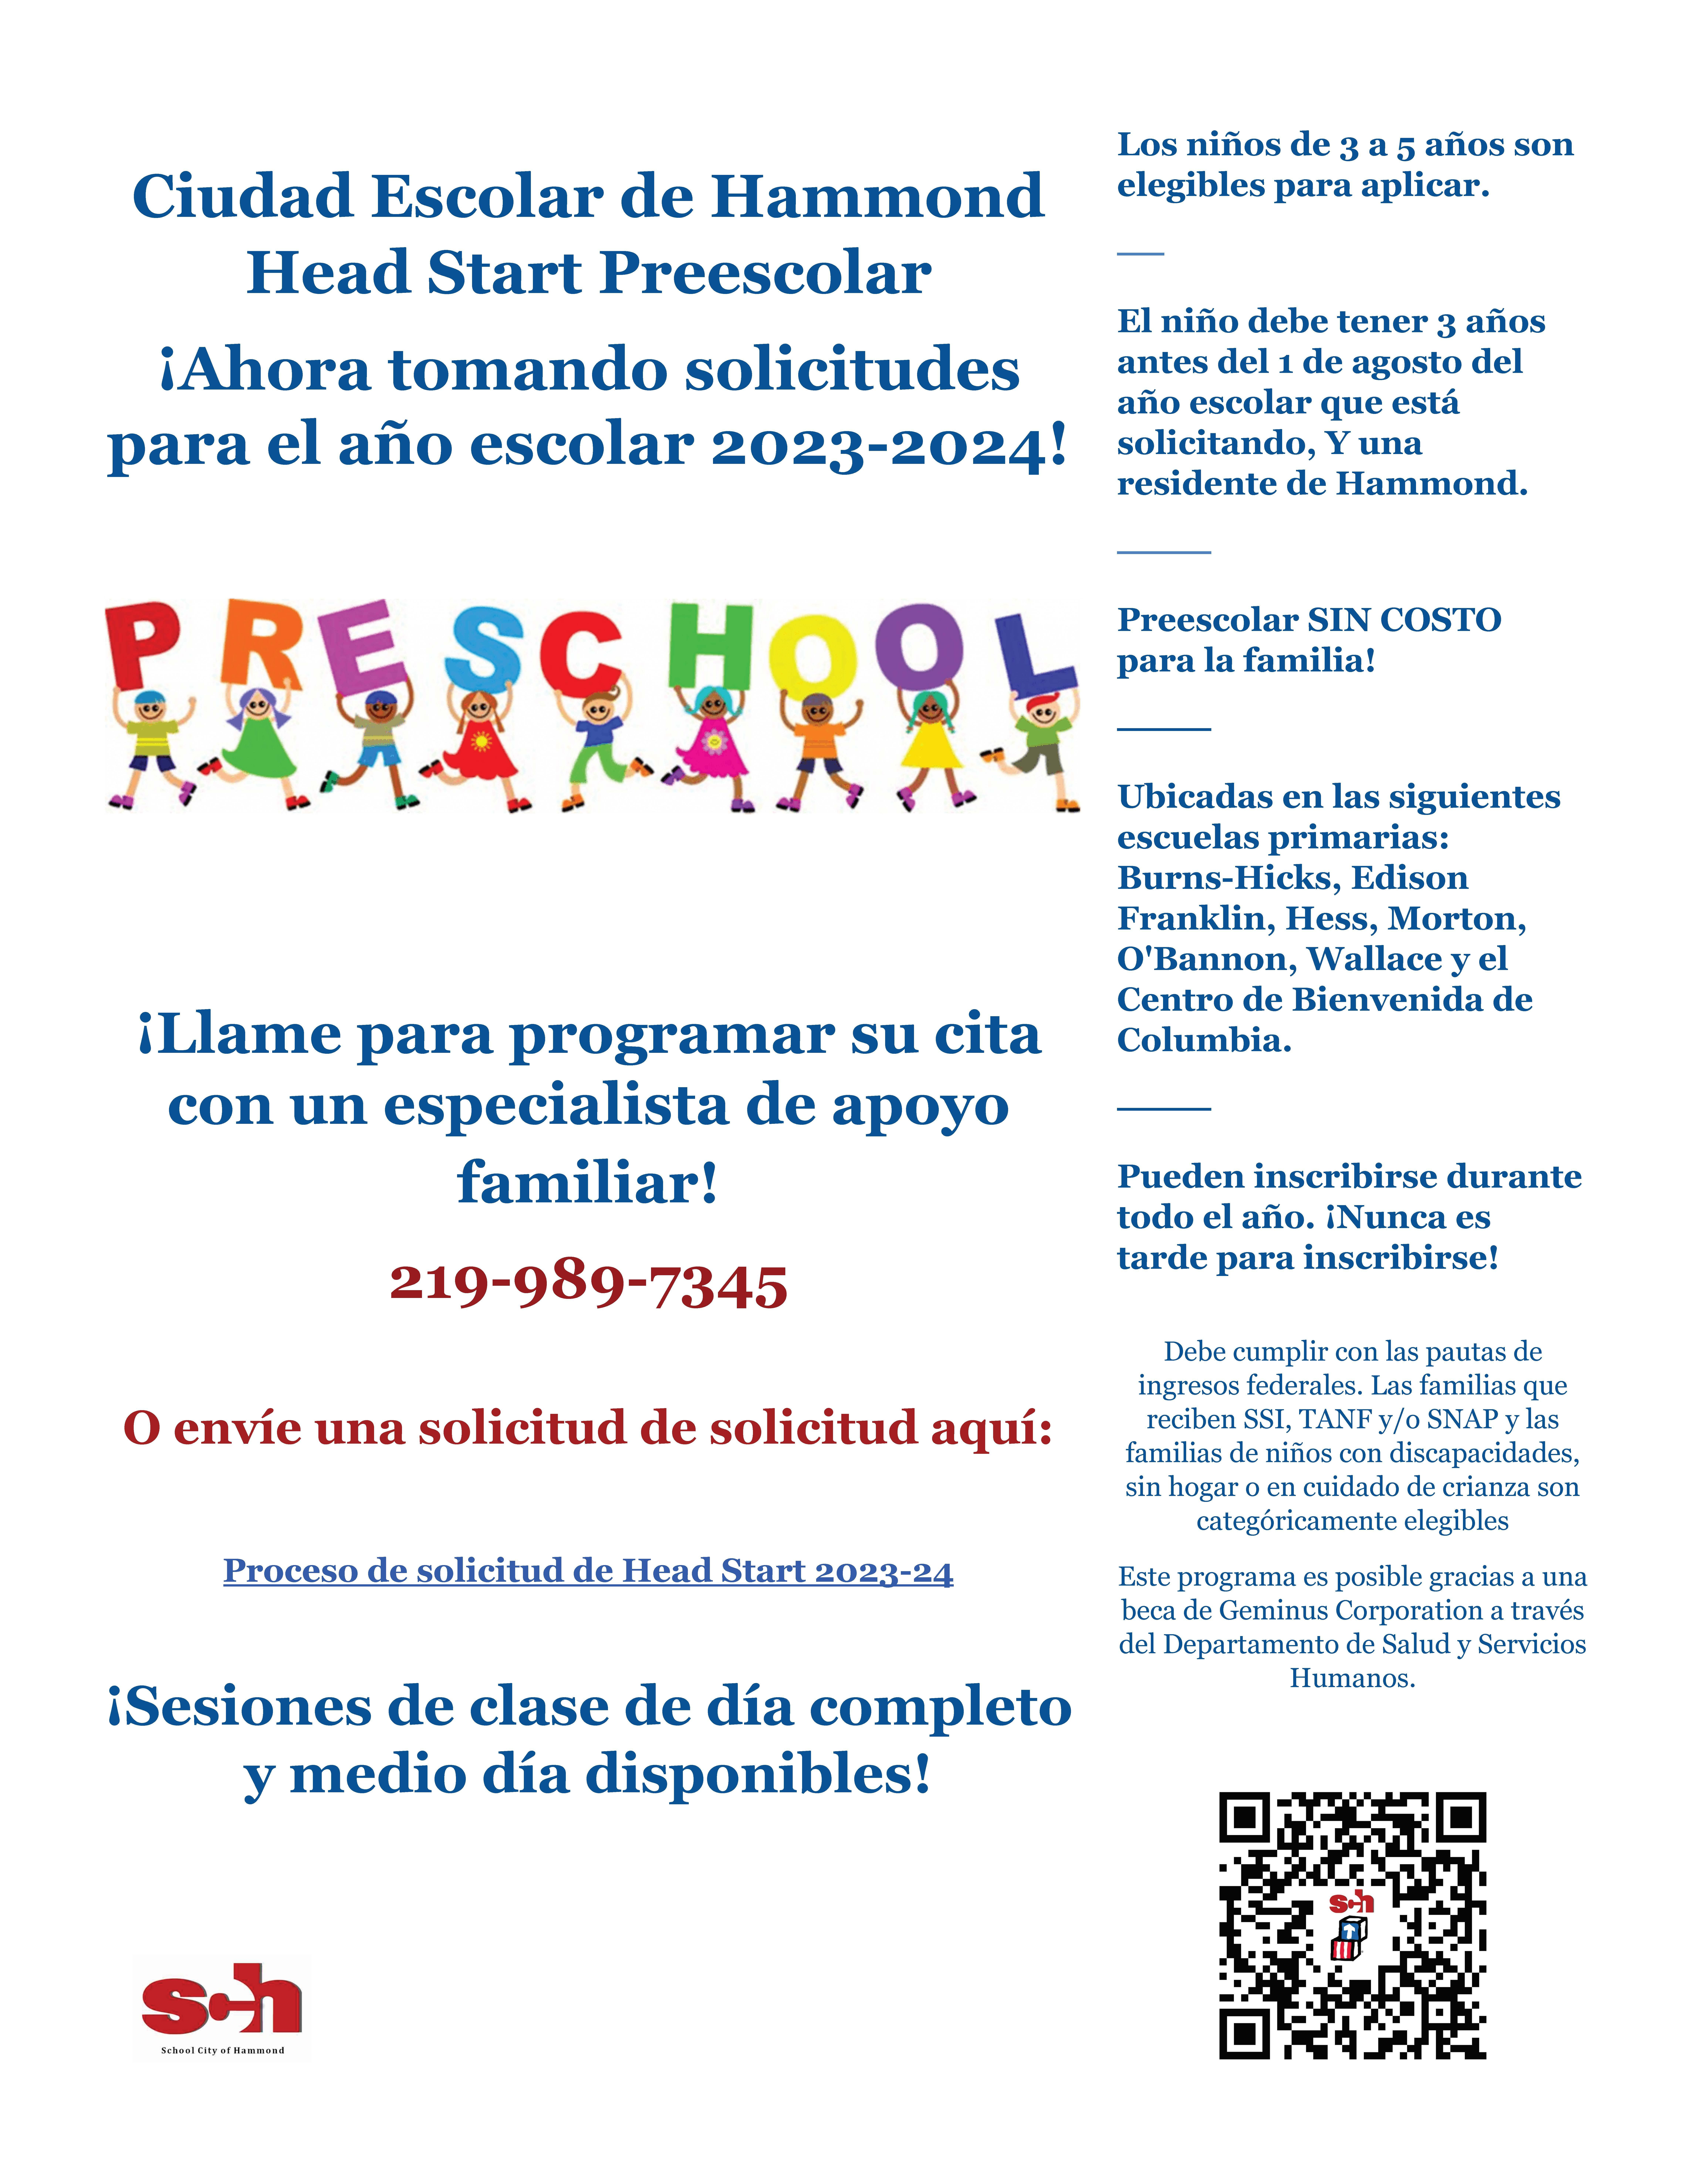 Head start enrollment flyer - Spanish